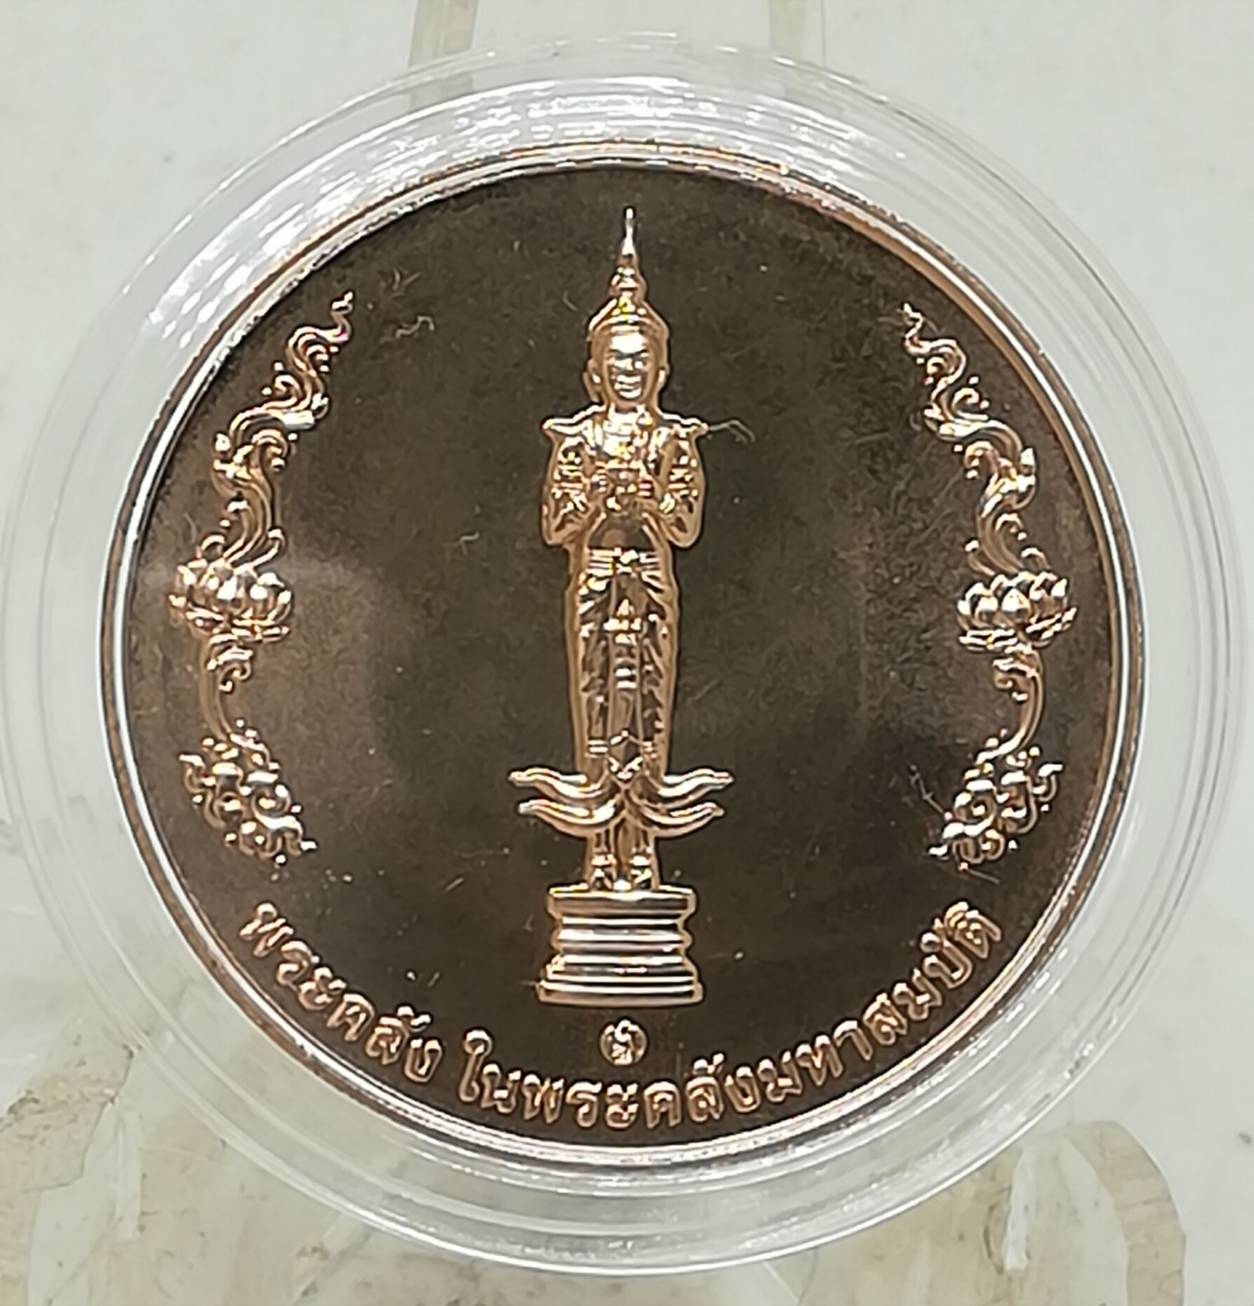 เหรียญทองแดงพระคลัง ในพระคลังมหาสมบัติ ครบ 88 ปี กรมธนารักษ์ พ.ศ. 2564 สภาพสวย พร้อมตลับพลาสติก